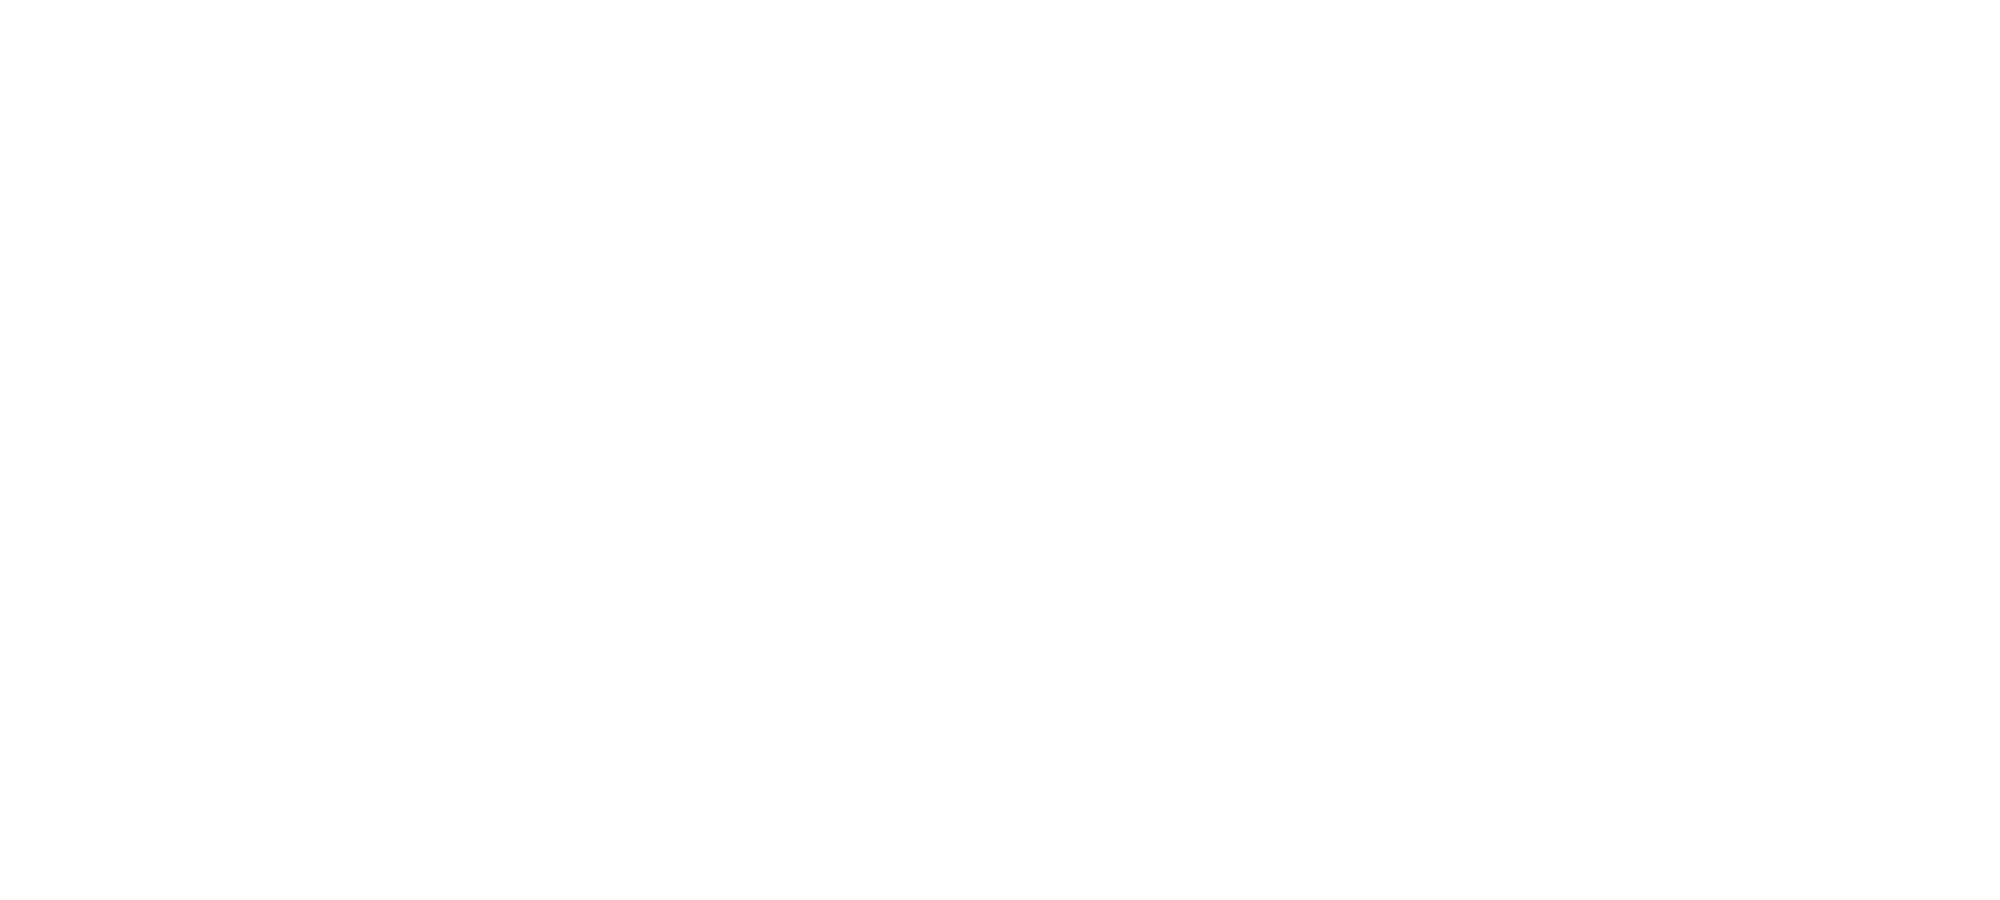 Logo TreeICT pay off DIAP White